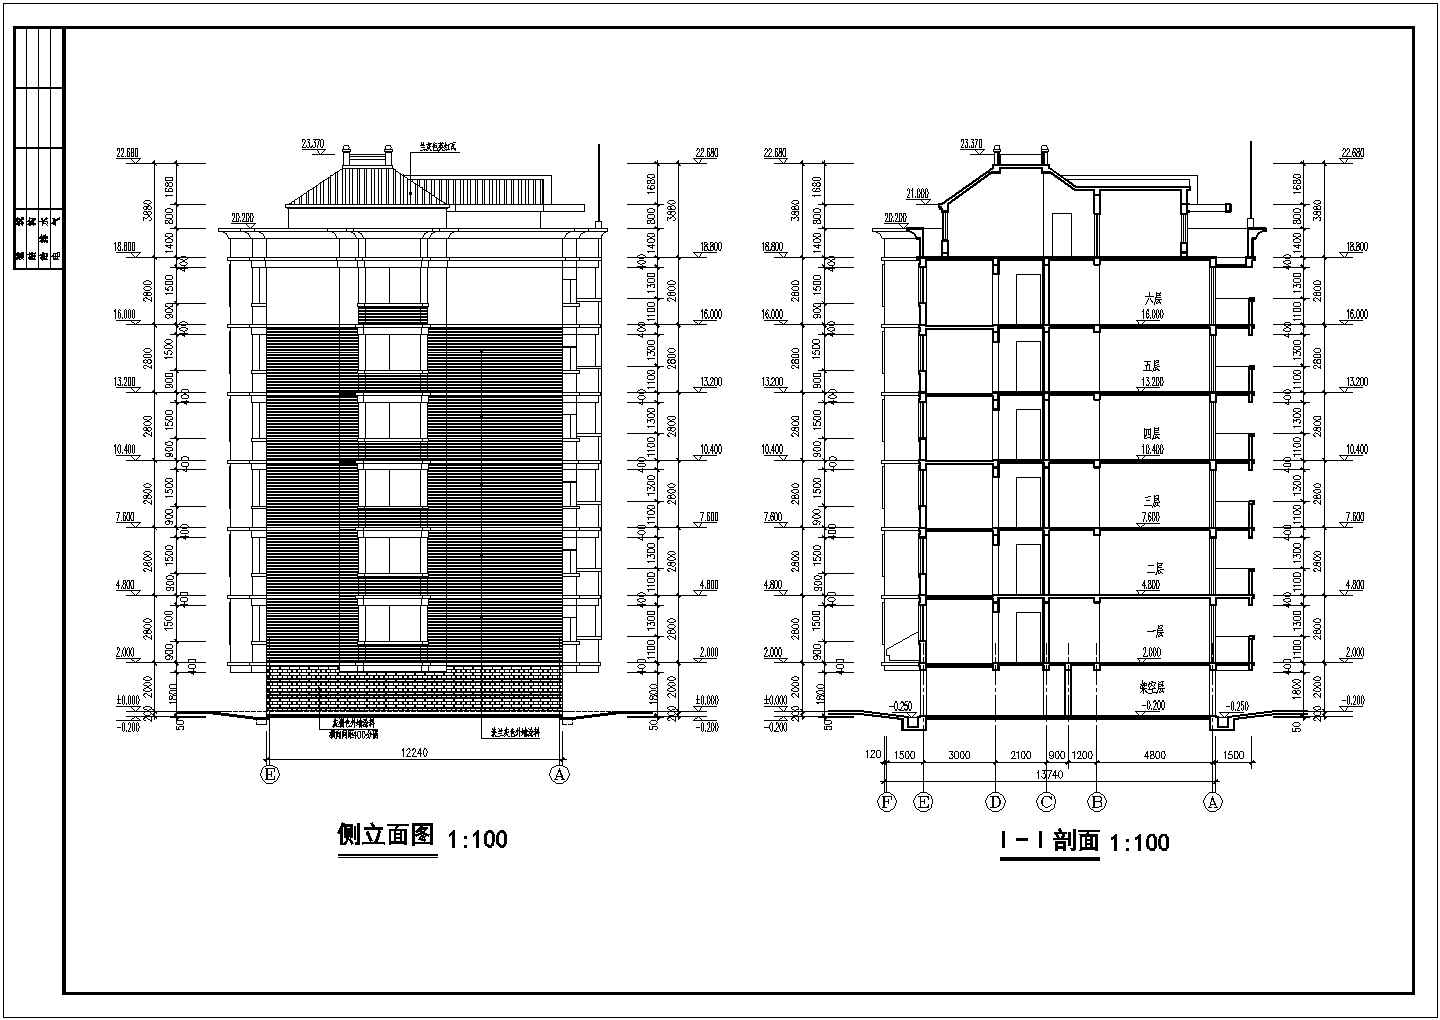 【6层】砖混结构公寓楼建筑设计图纸（含设计说明）-底部为架空层